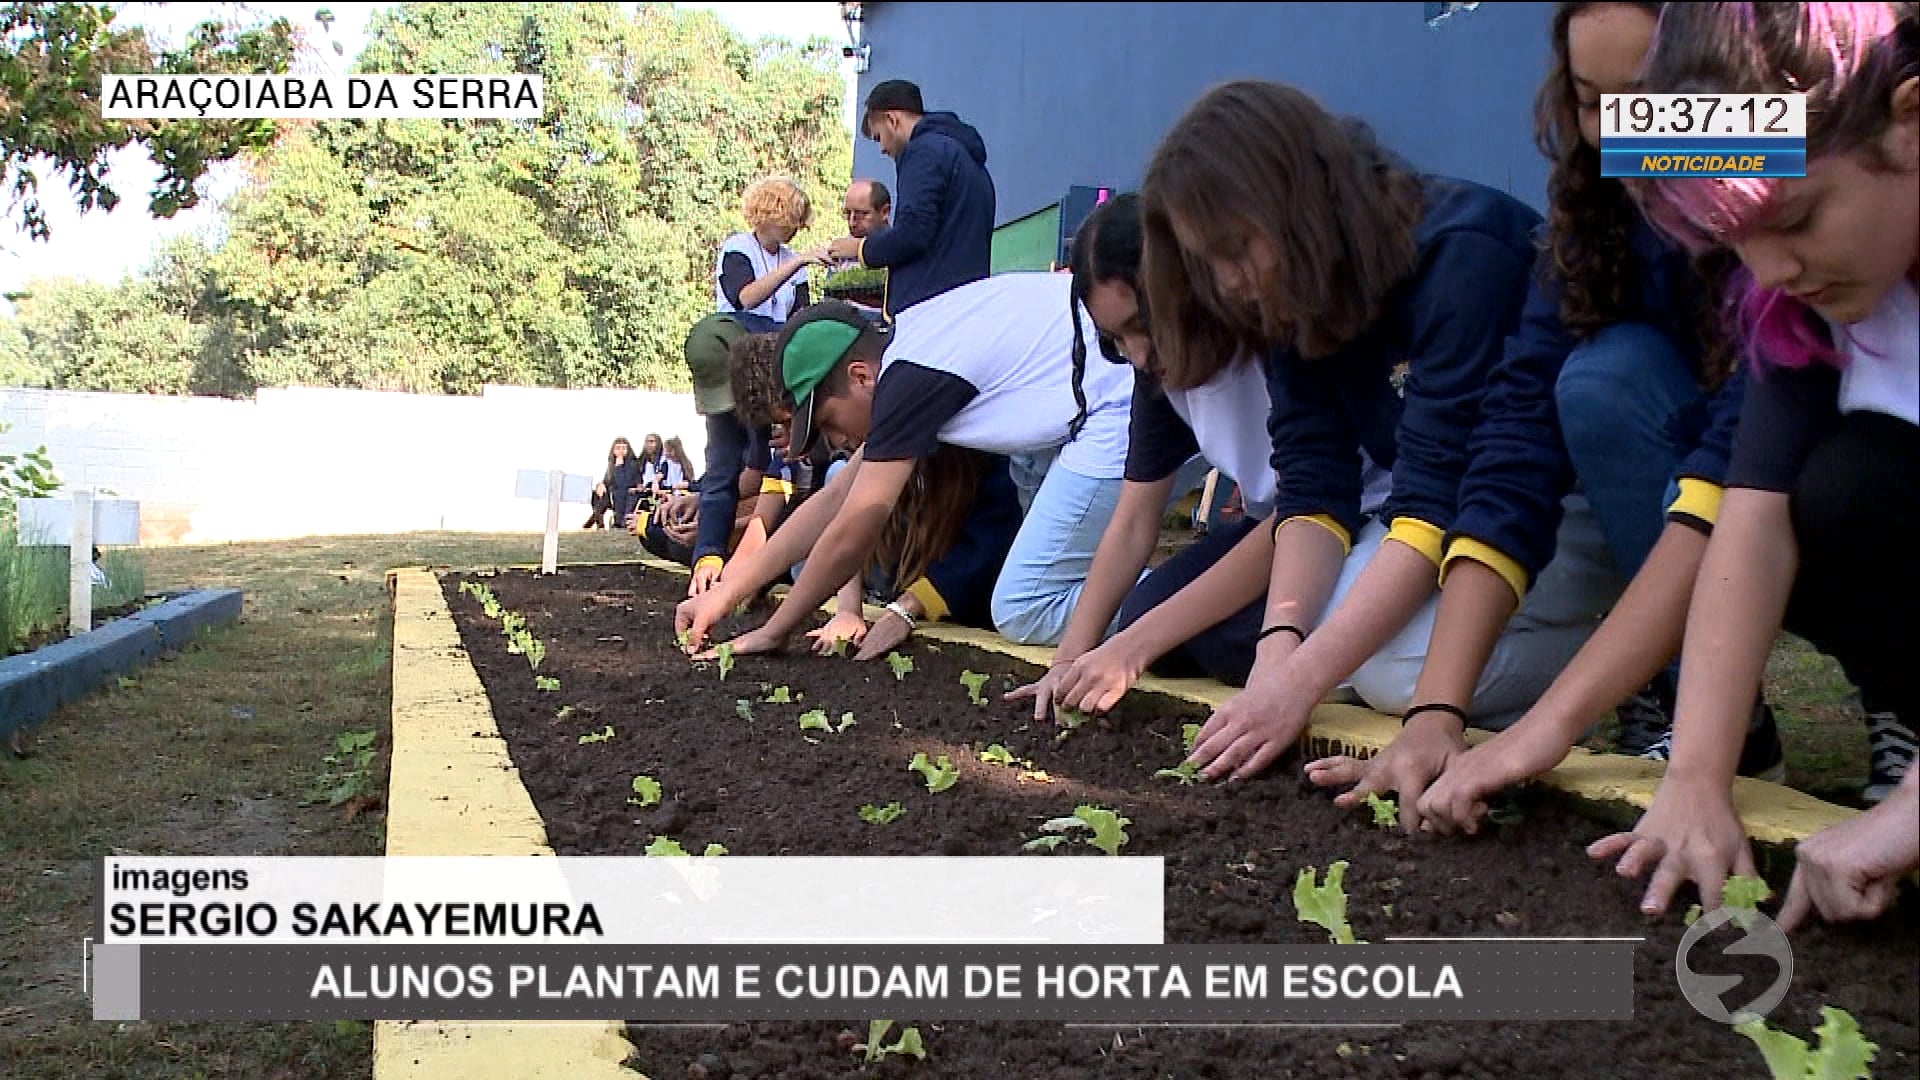 alunos-plantam-e-cuidam-de-horta-em-escola-de-aracoiaba-da-serra